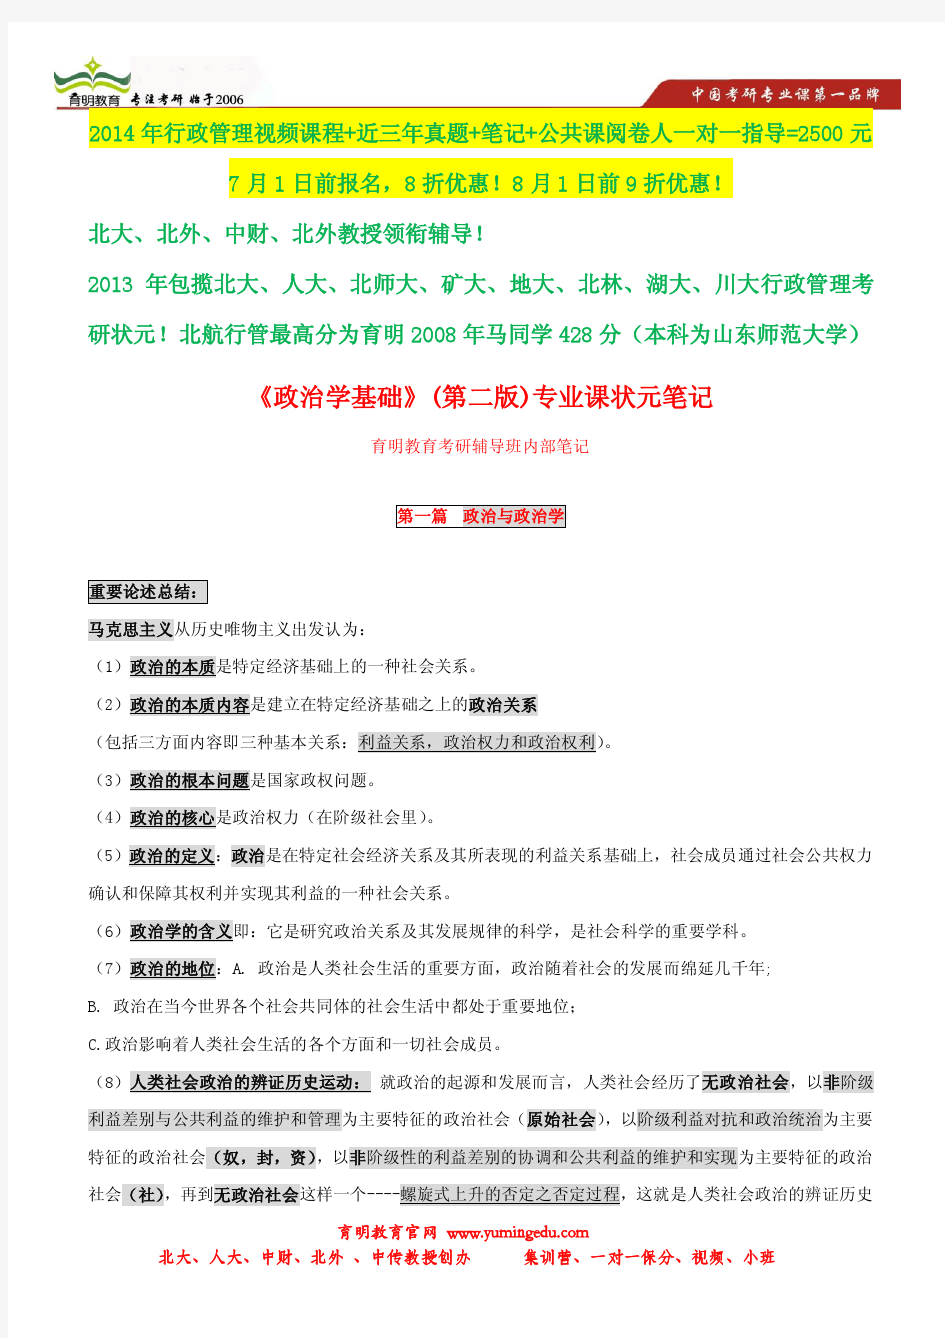 王浦劬 政治学基础考研状元笔记,考研参考书笔记